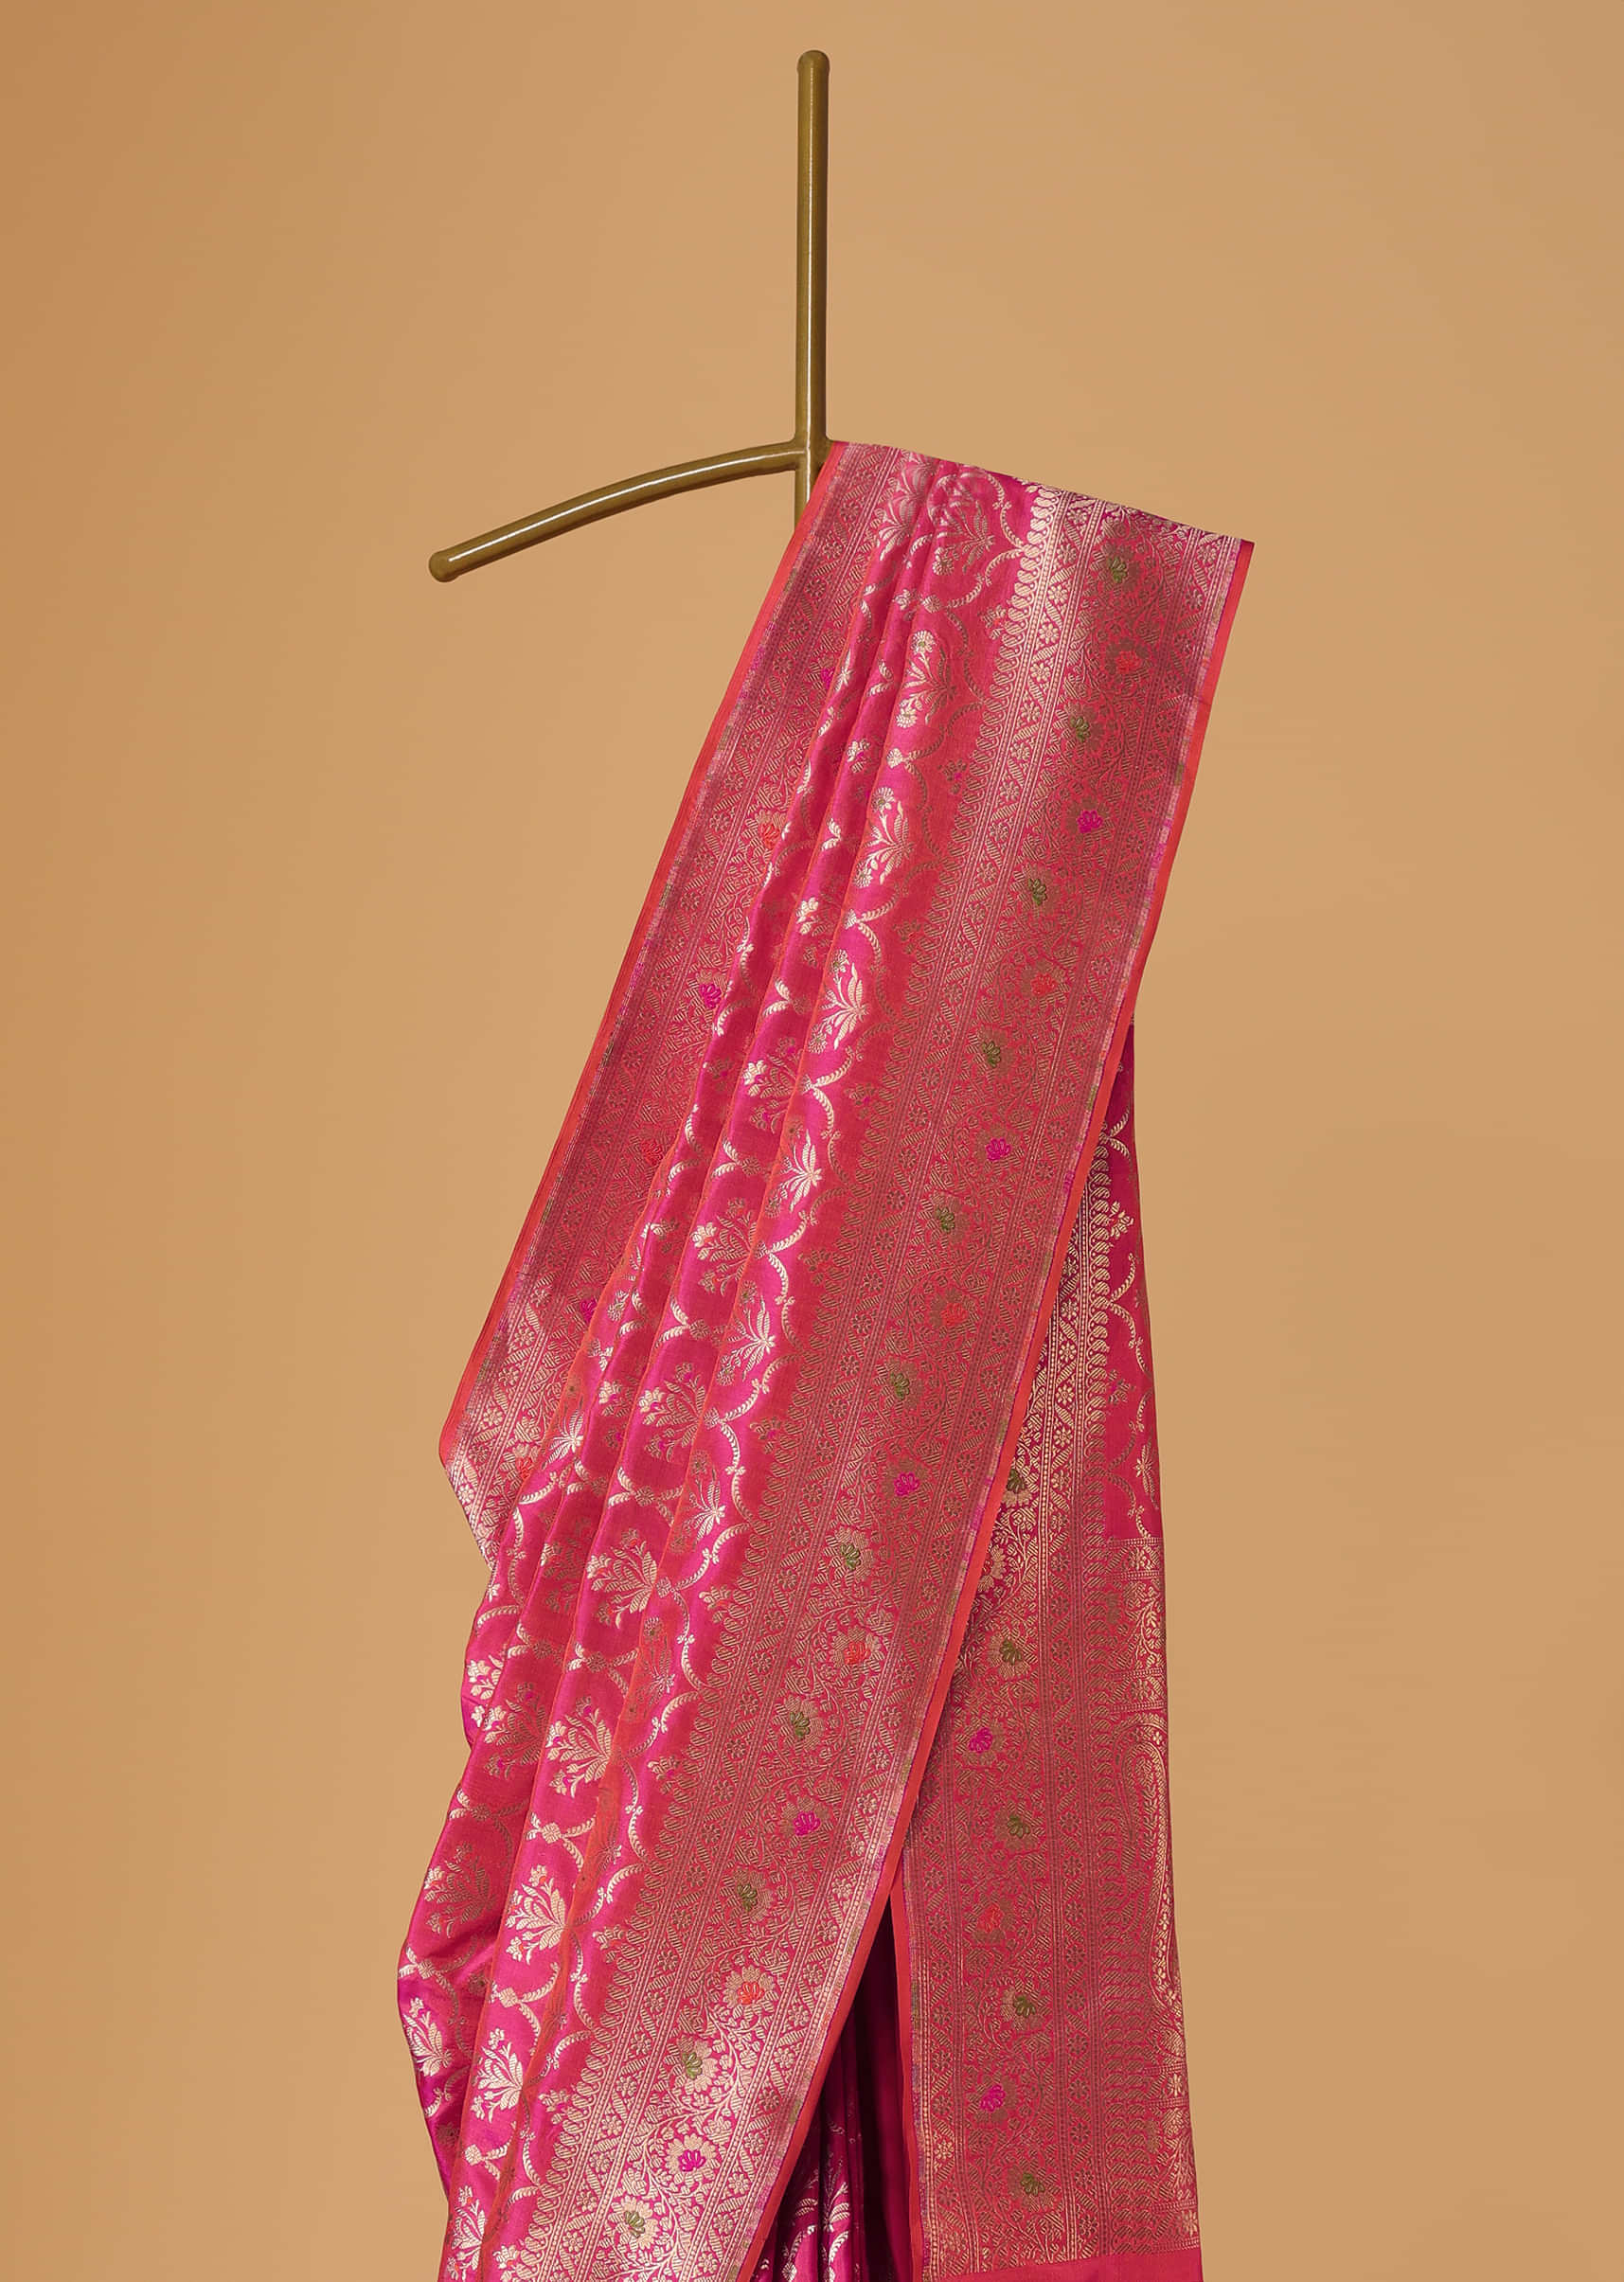 Cheery Pink Handloom Banarasi Saree In Uppada Silk With Gold Weave Meenakari Border